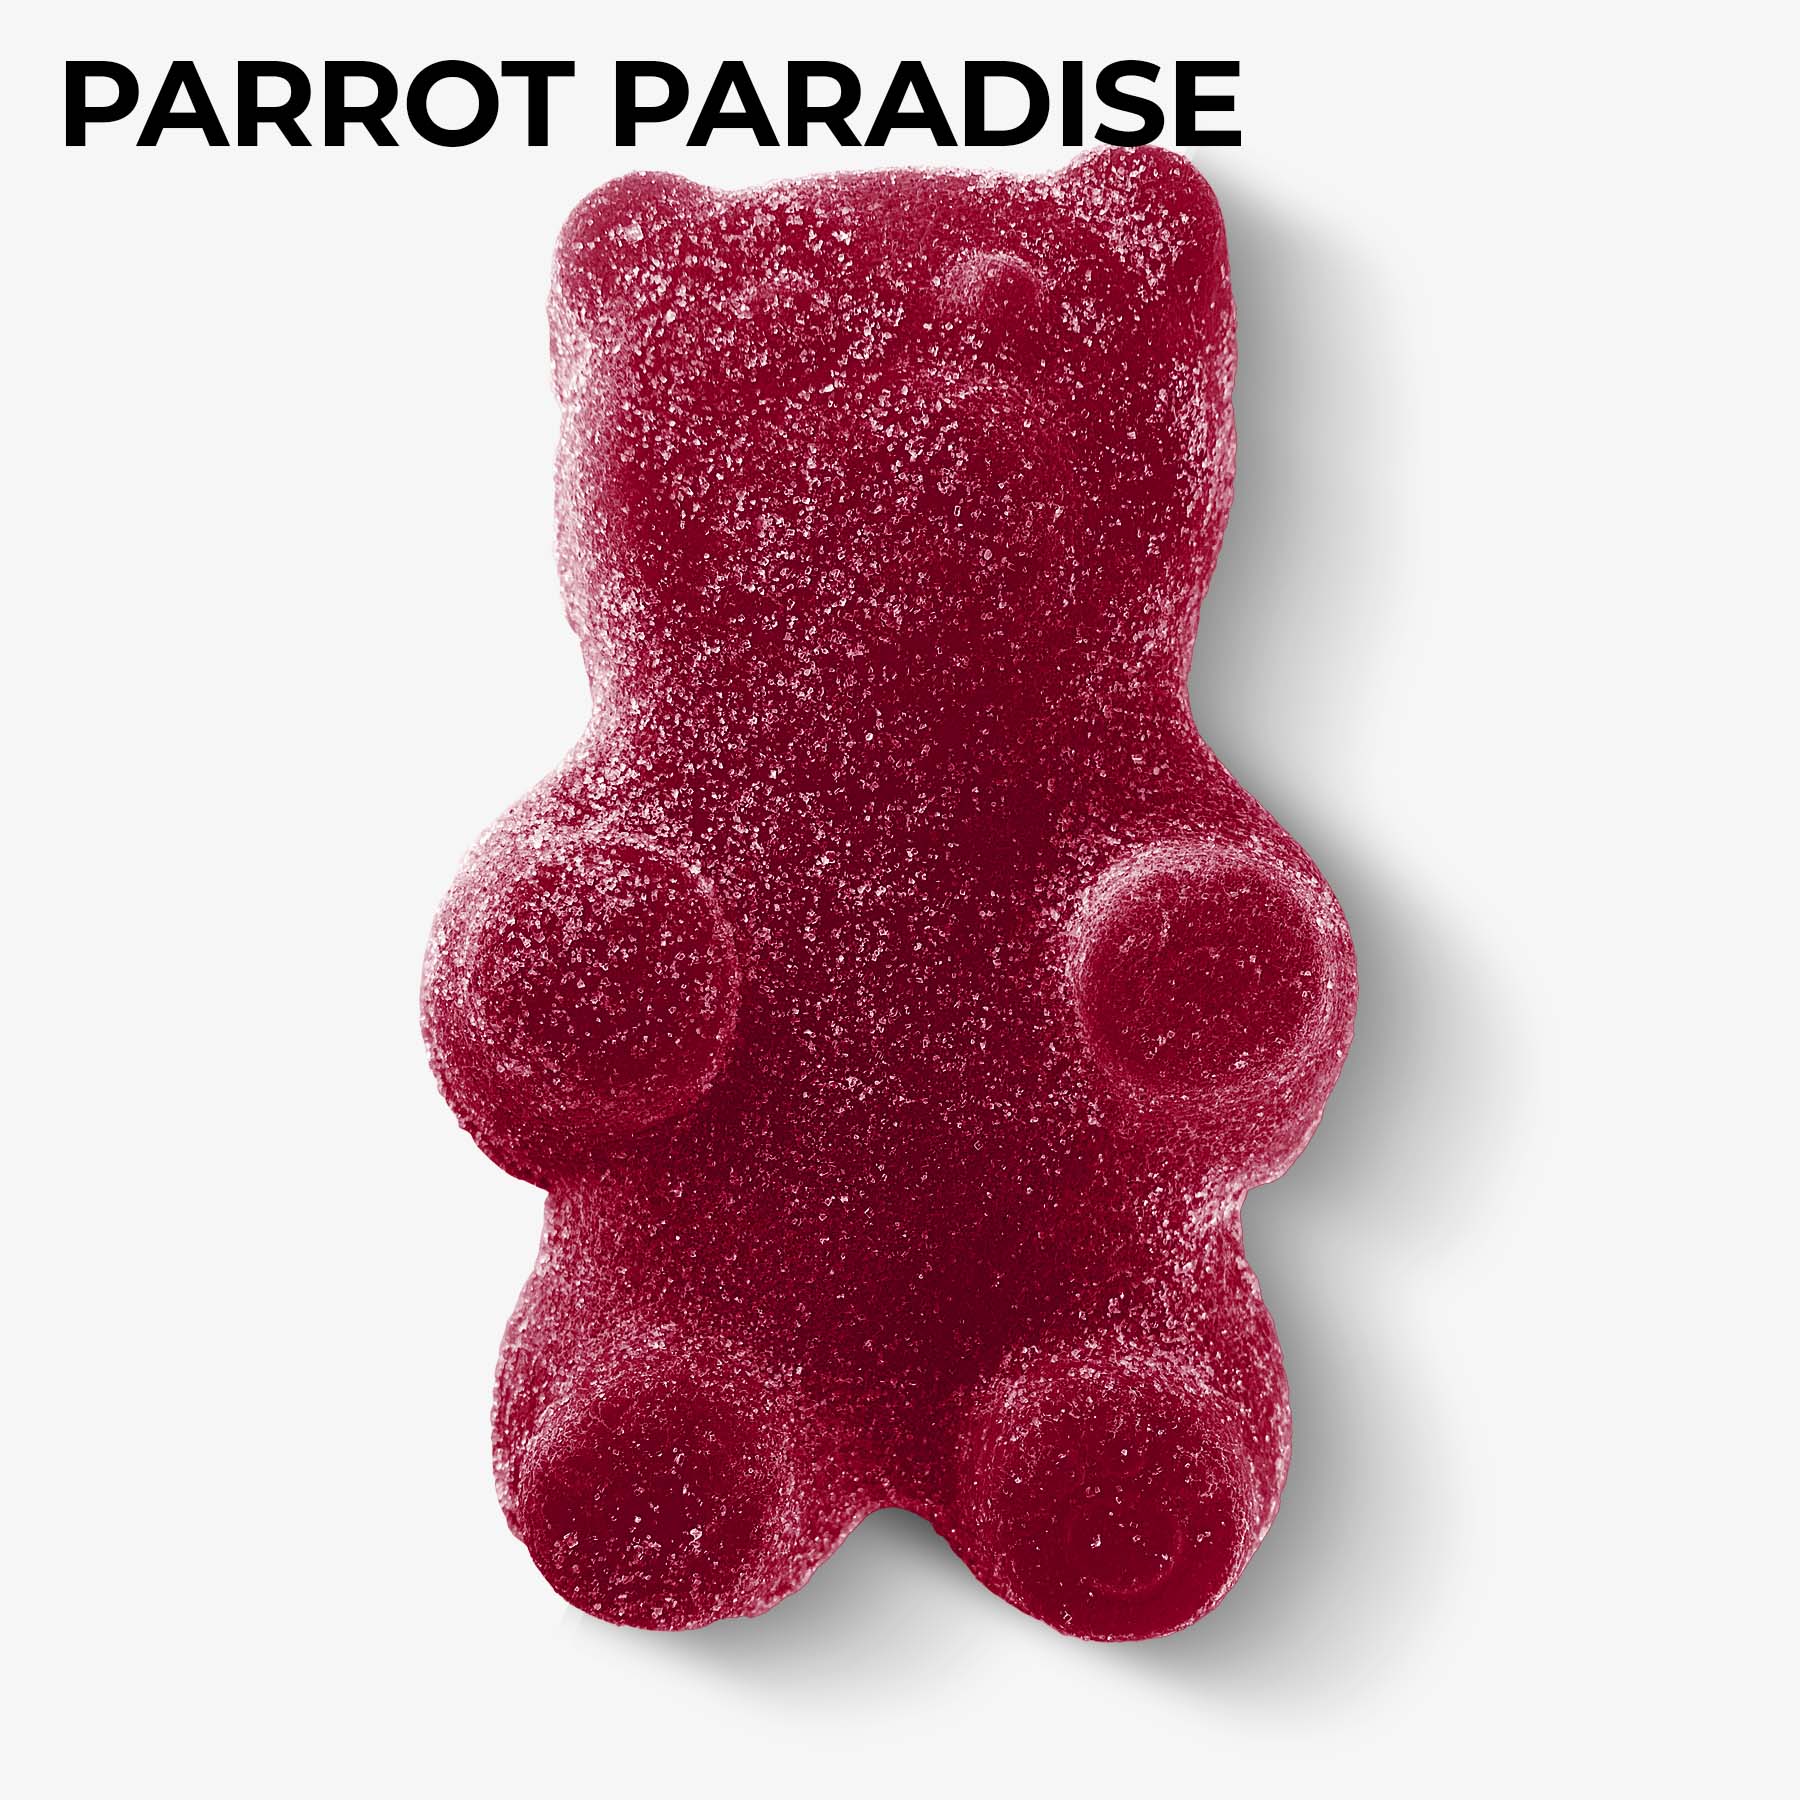 revenge giant gummy bear parrot paradise